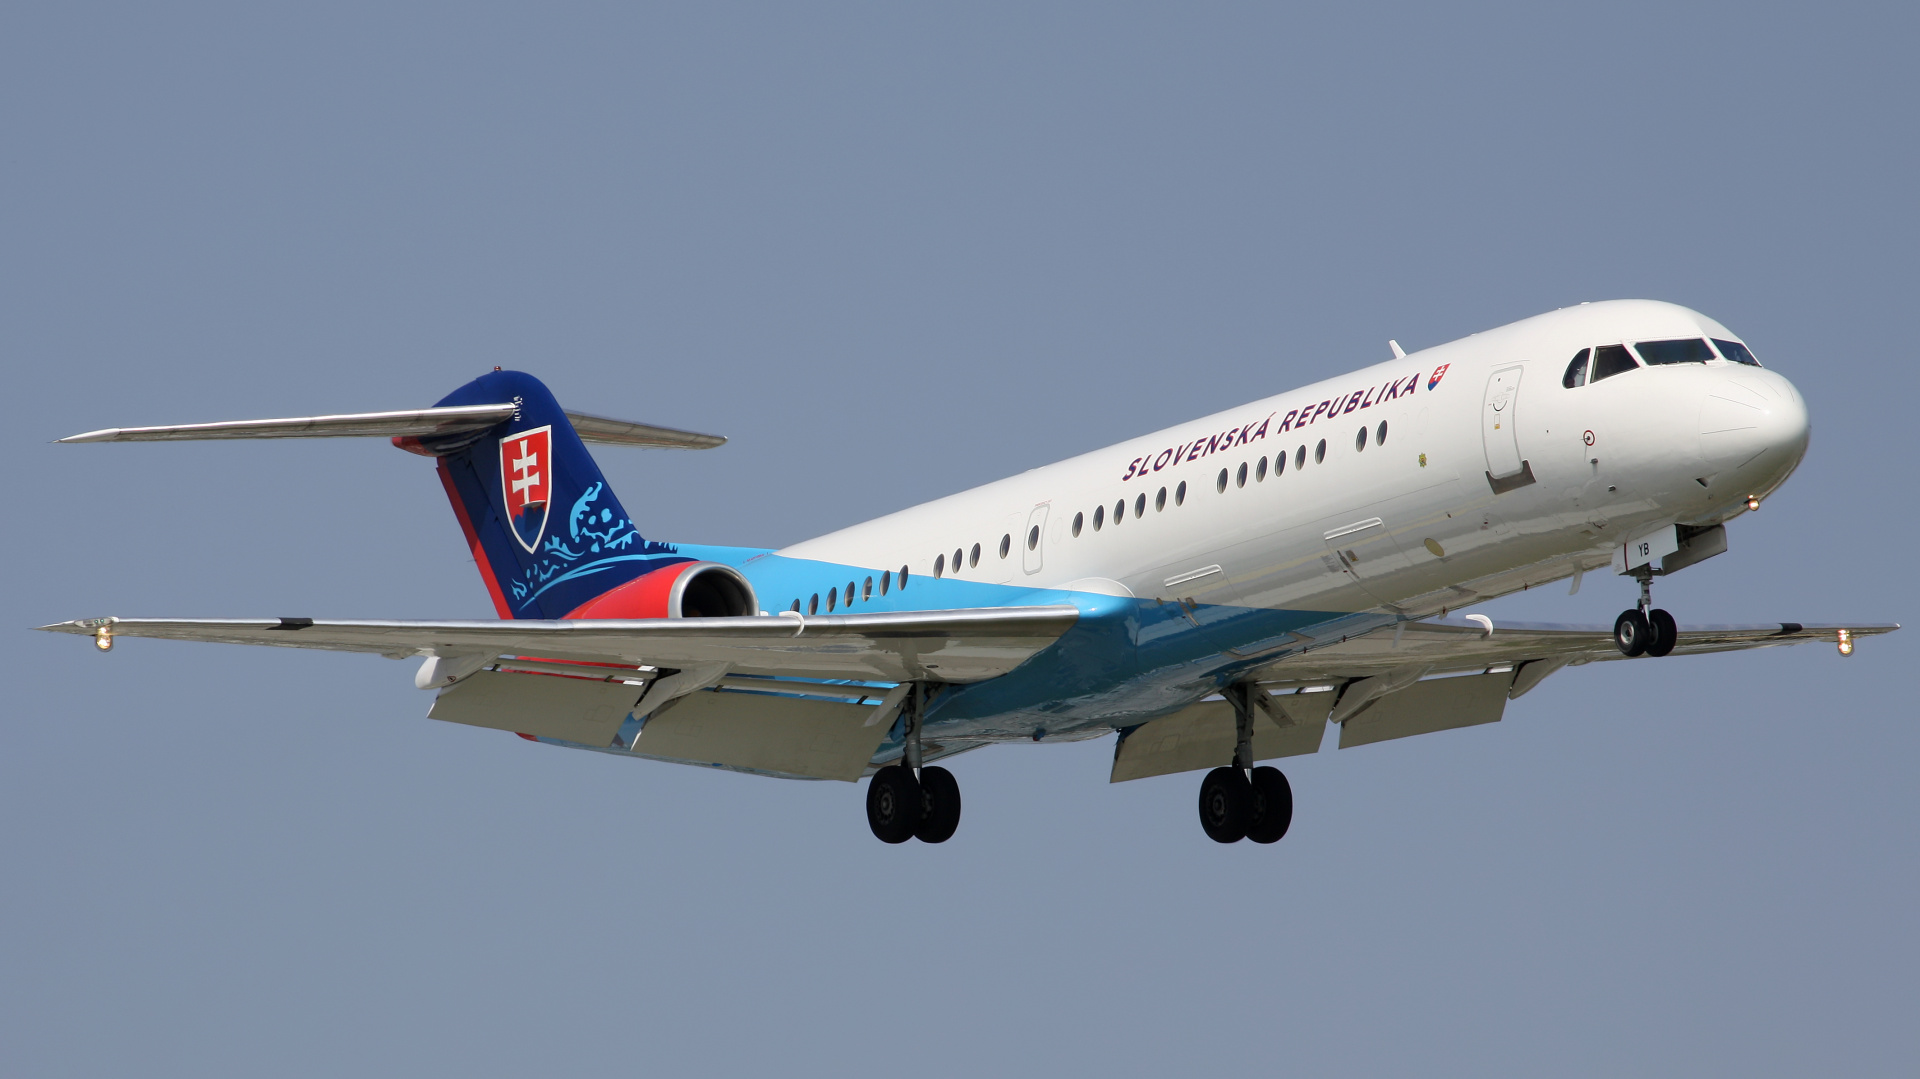 OM-BYB, Rząd Słowacji (Samoloty » Spotting na EPWA » Fokker 100)